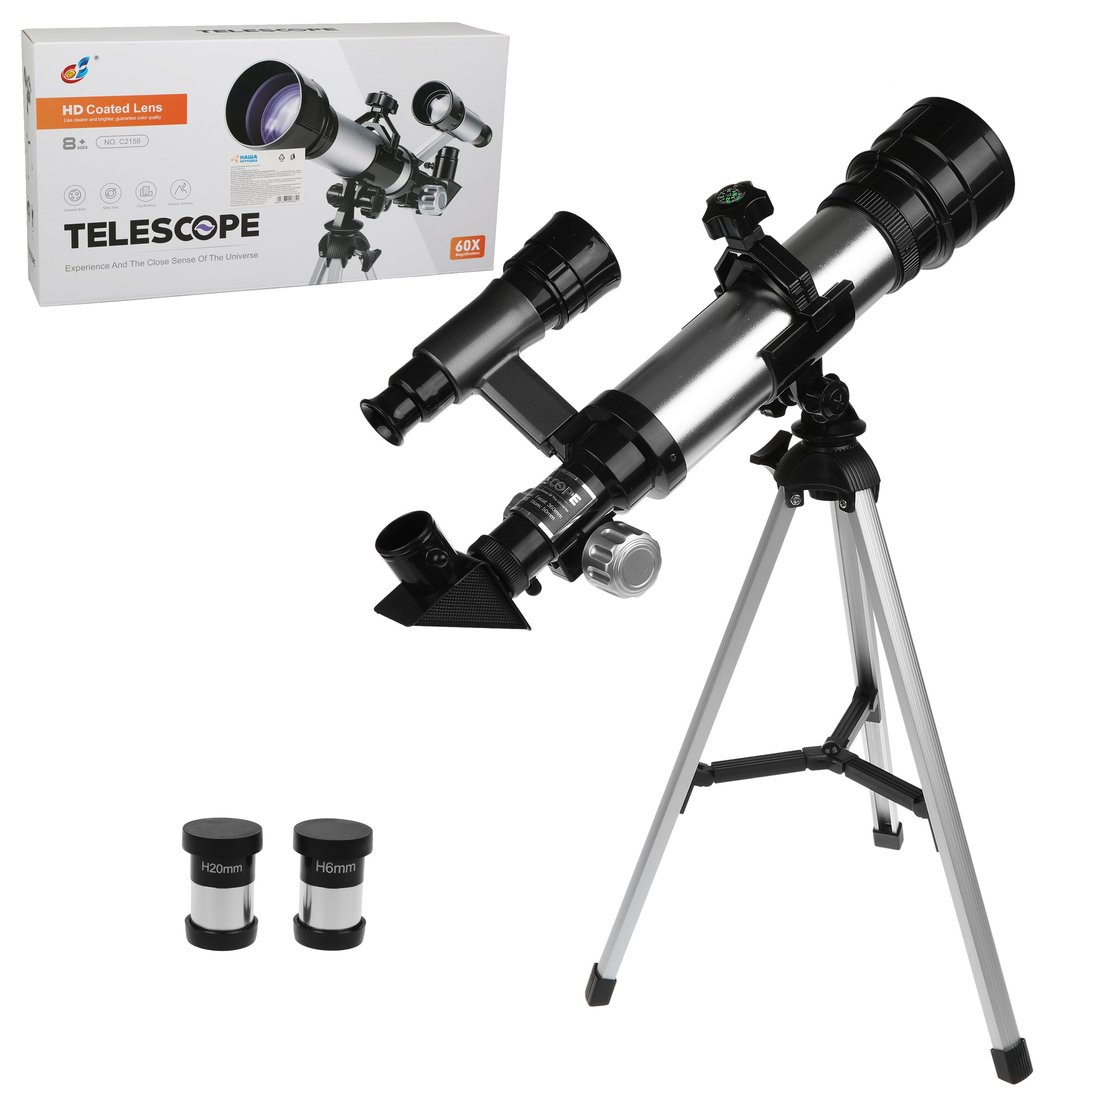 Телескоп детский Наша Игрушка 60х увеличение, 3 объектива арт. 800664 телескоп детский наша игрушка 60х увеличение 3 объектива арт 800664